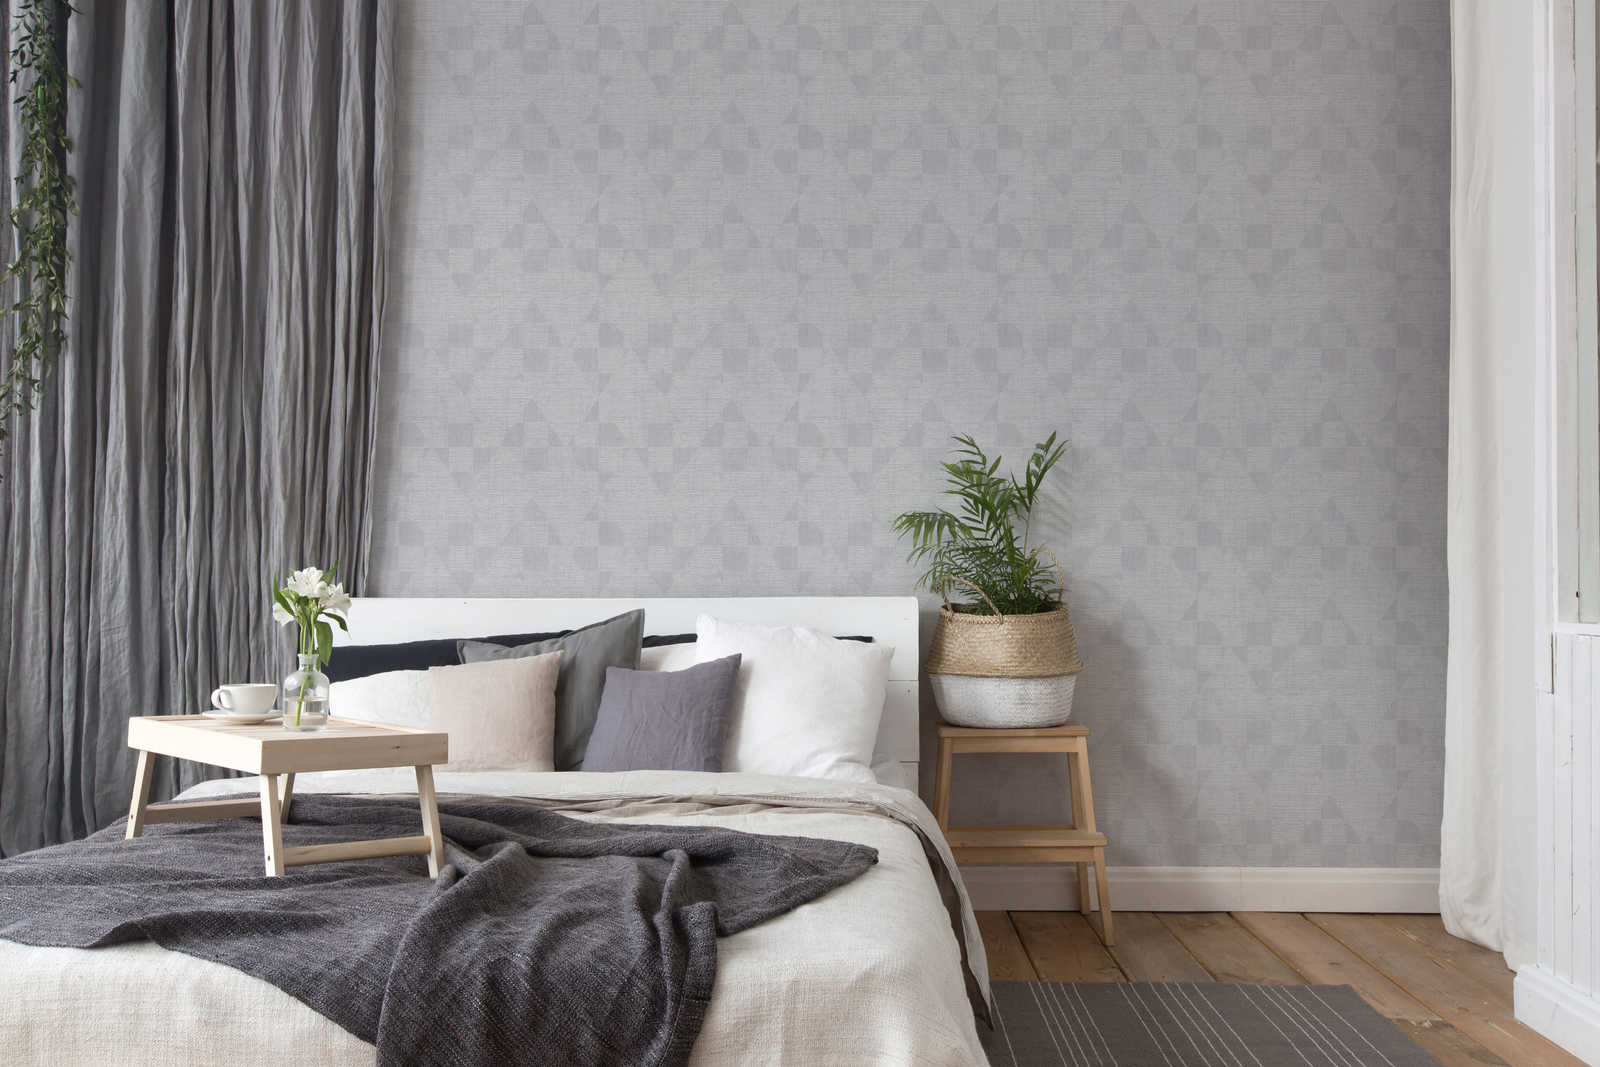             Melange wallpaper with retro pattern & metallic sheen - grey
        